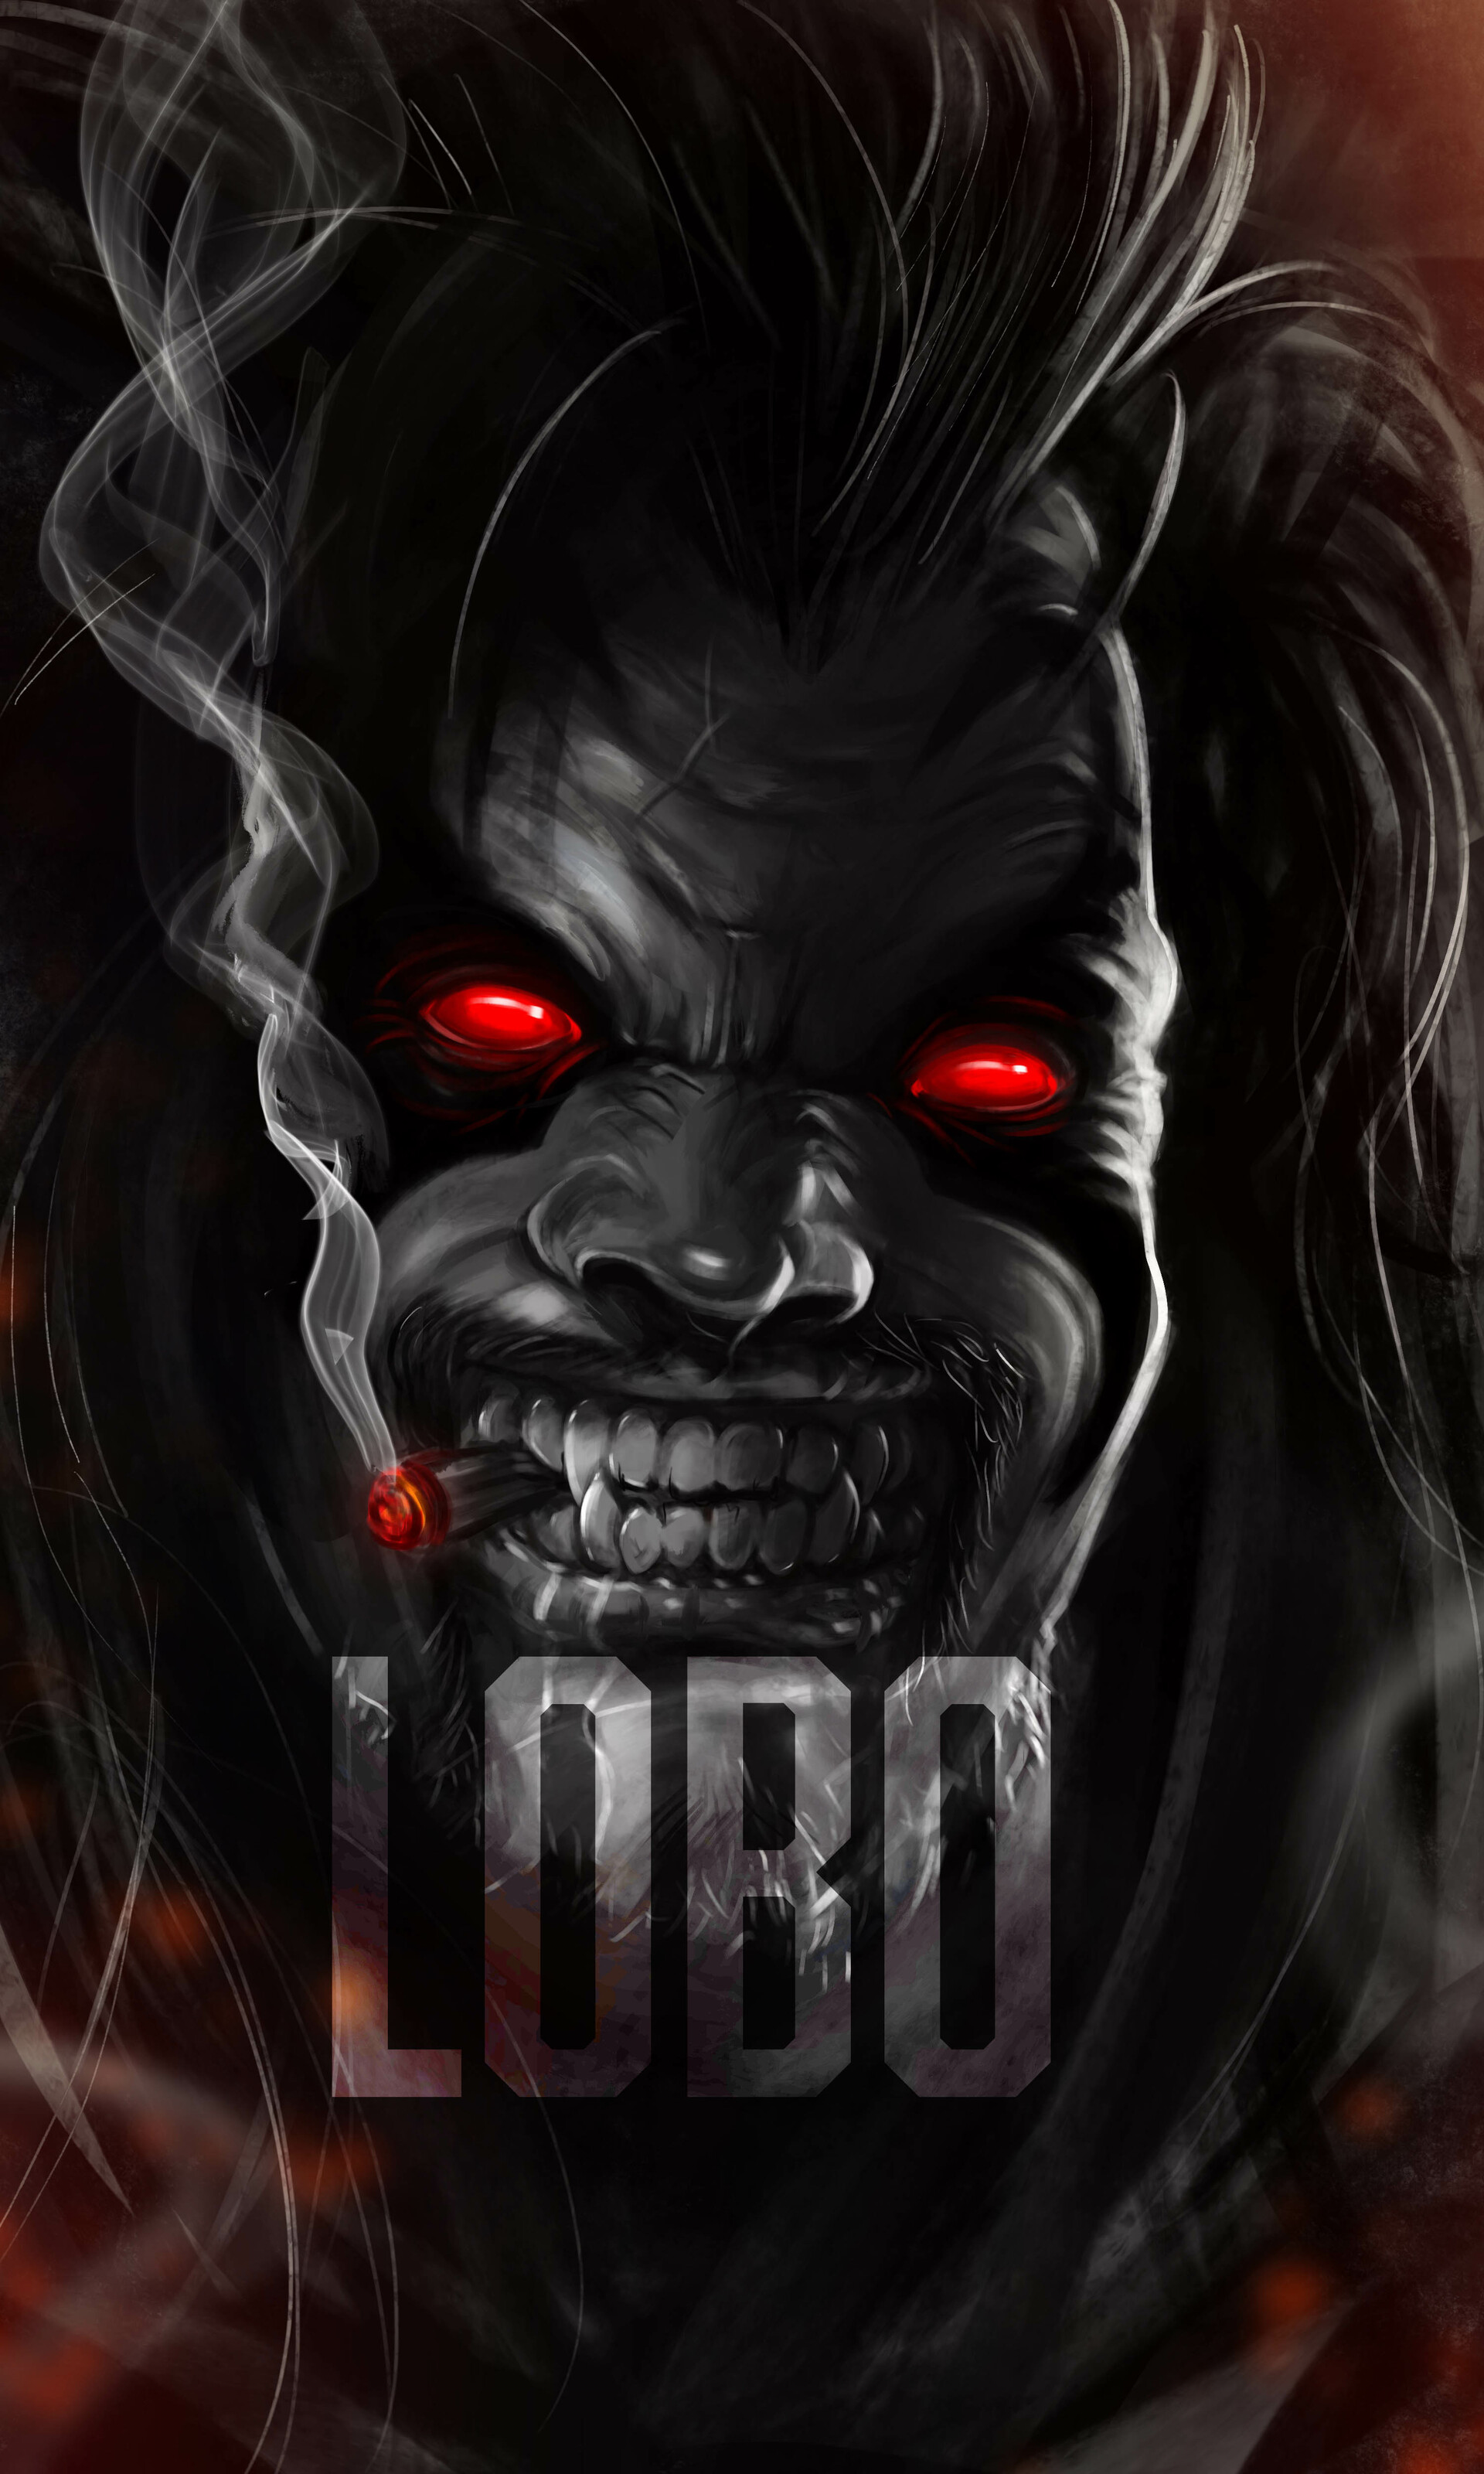 DC Comics Reveals the New Lobo | Concept Art World